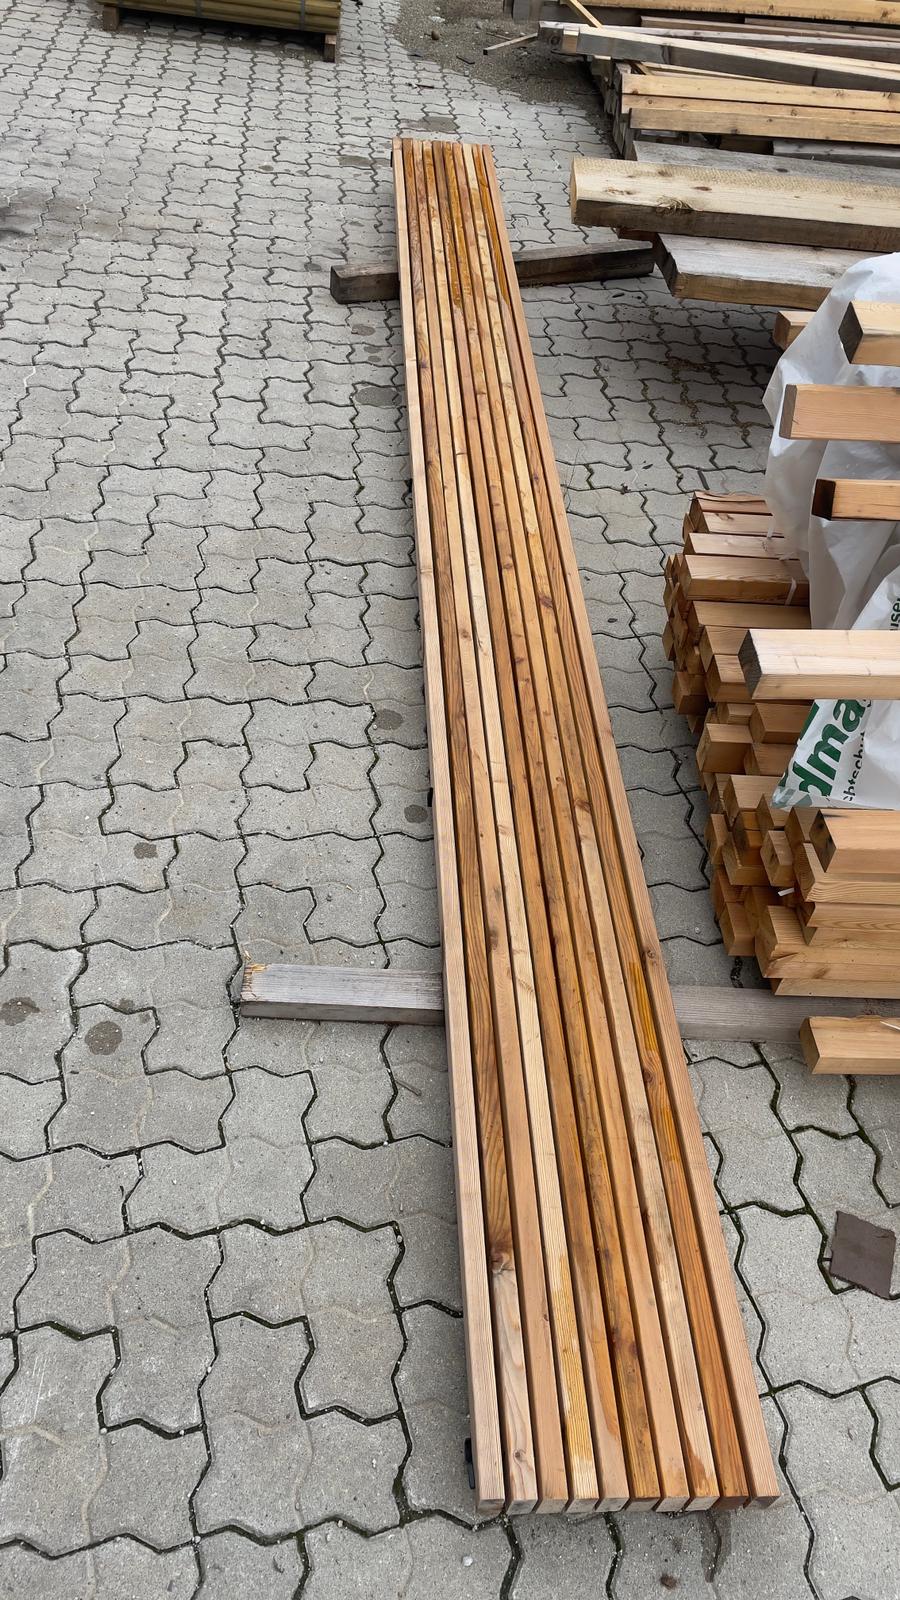 Mocopinus - Pinutex - Reststück 400cm - kaufen Meine Holzhandlung - Holz kaufen München